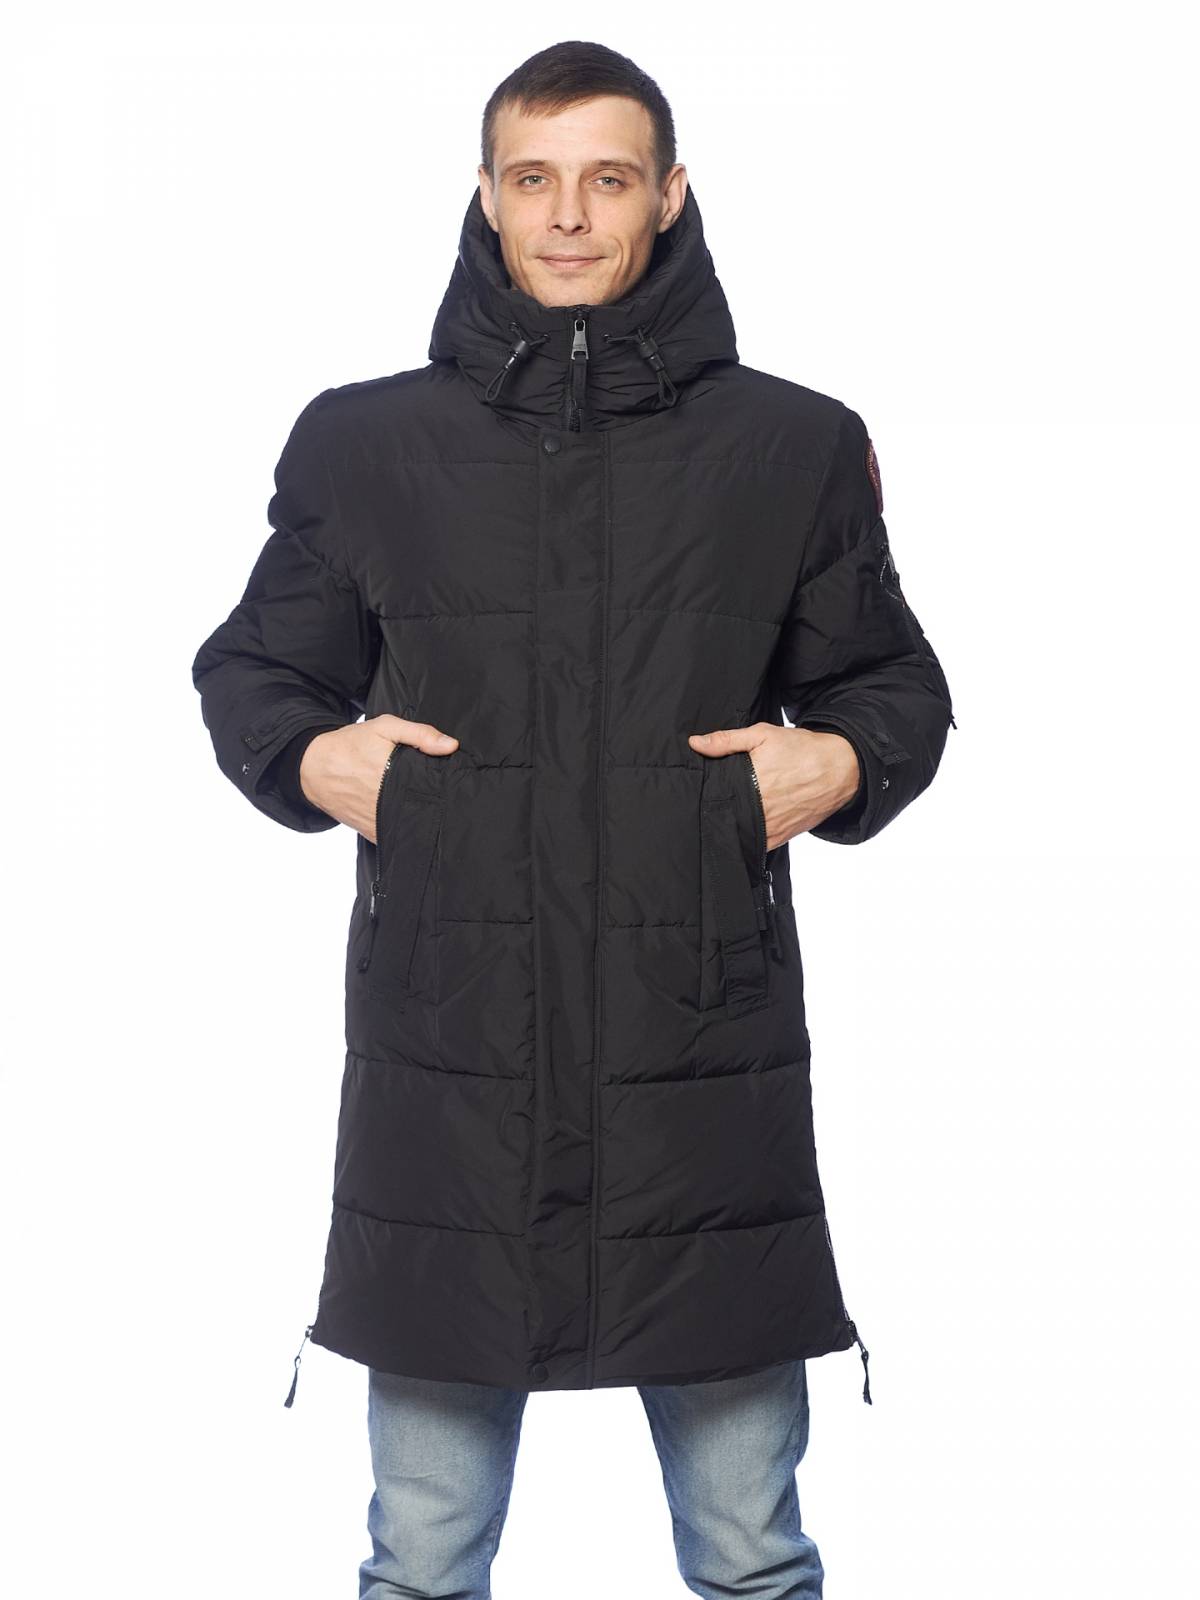 Зимняя куртка мужская Shark Force 4211 черная 56 RU